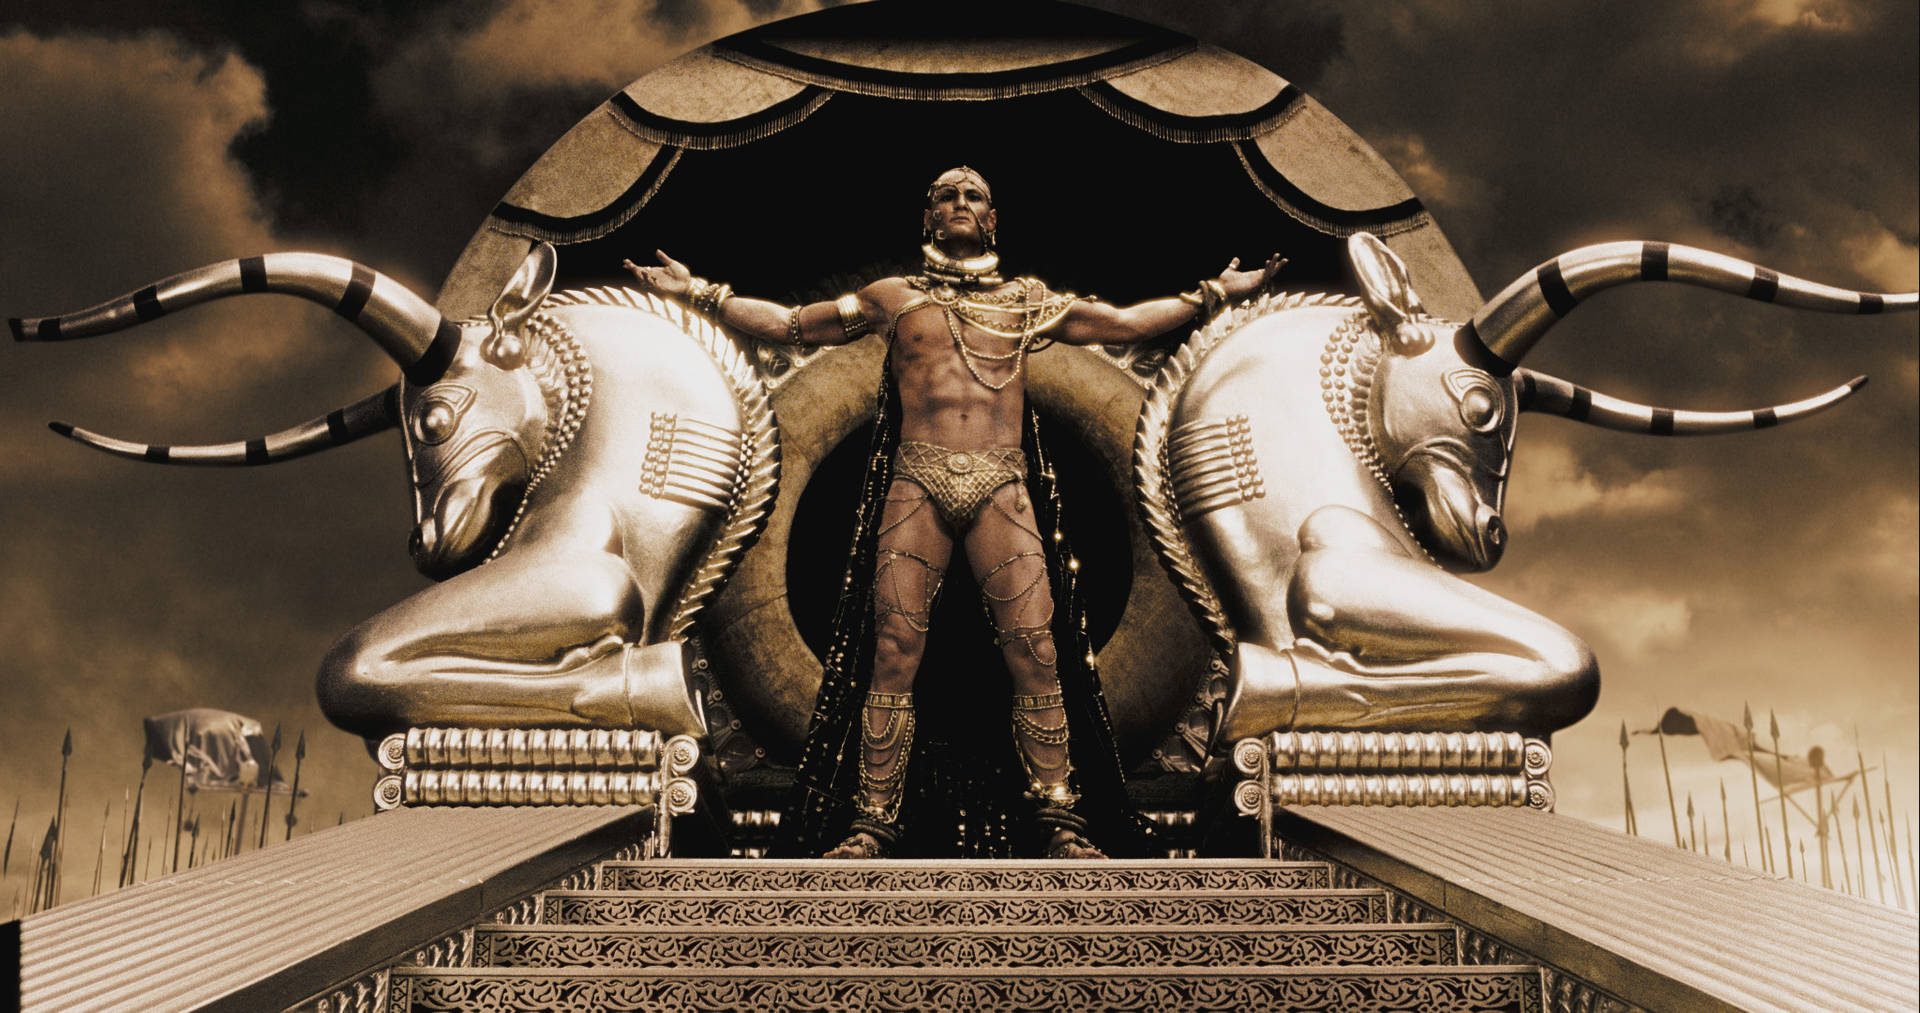 Caption: Rodrigo Santoro as King Xerxes in the Movie Wallpaper